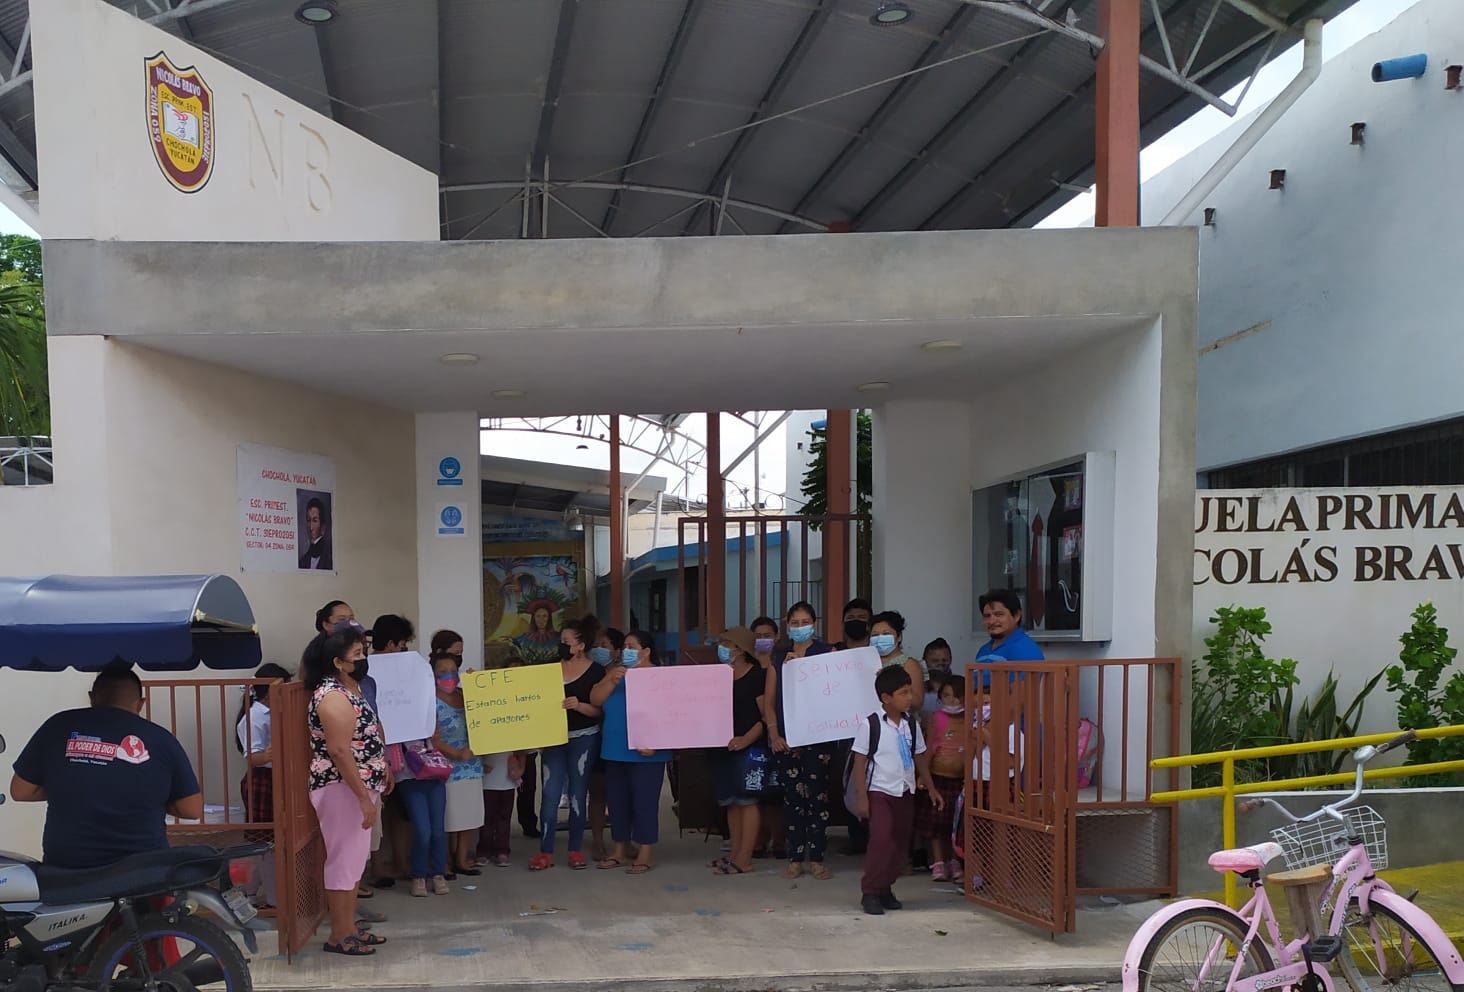 Padres de familia de Chocholá protestan en contra de la CFE por fallas eléctricas en escuela